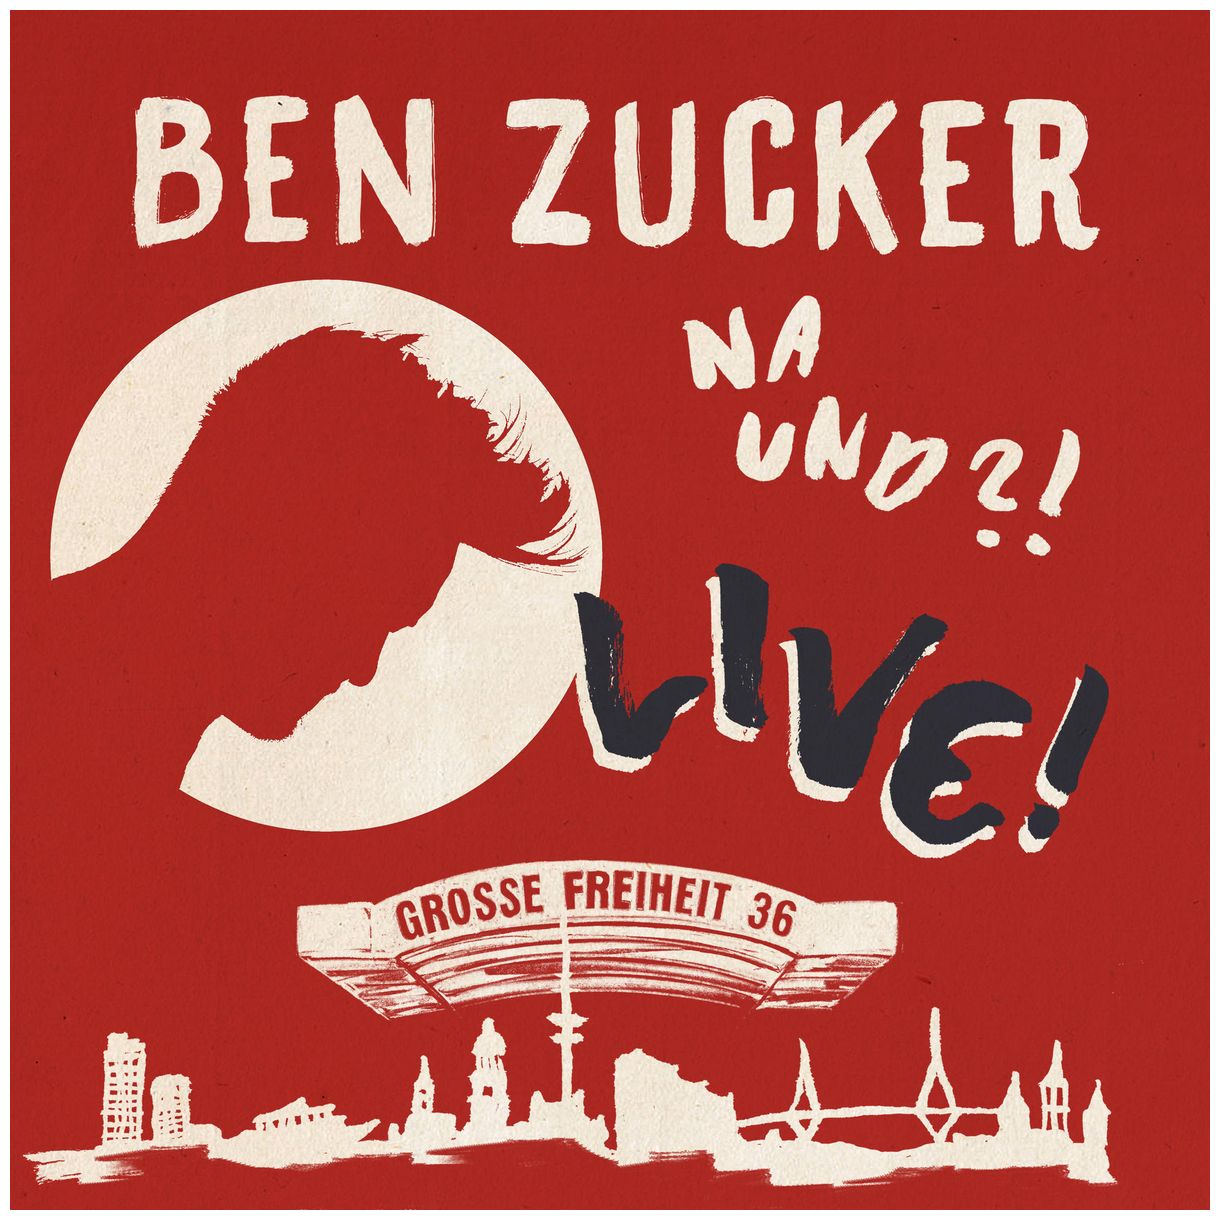 Ben Zucker - Na und?! Live! 